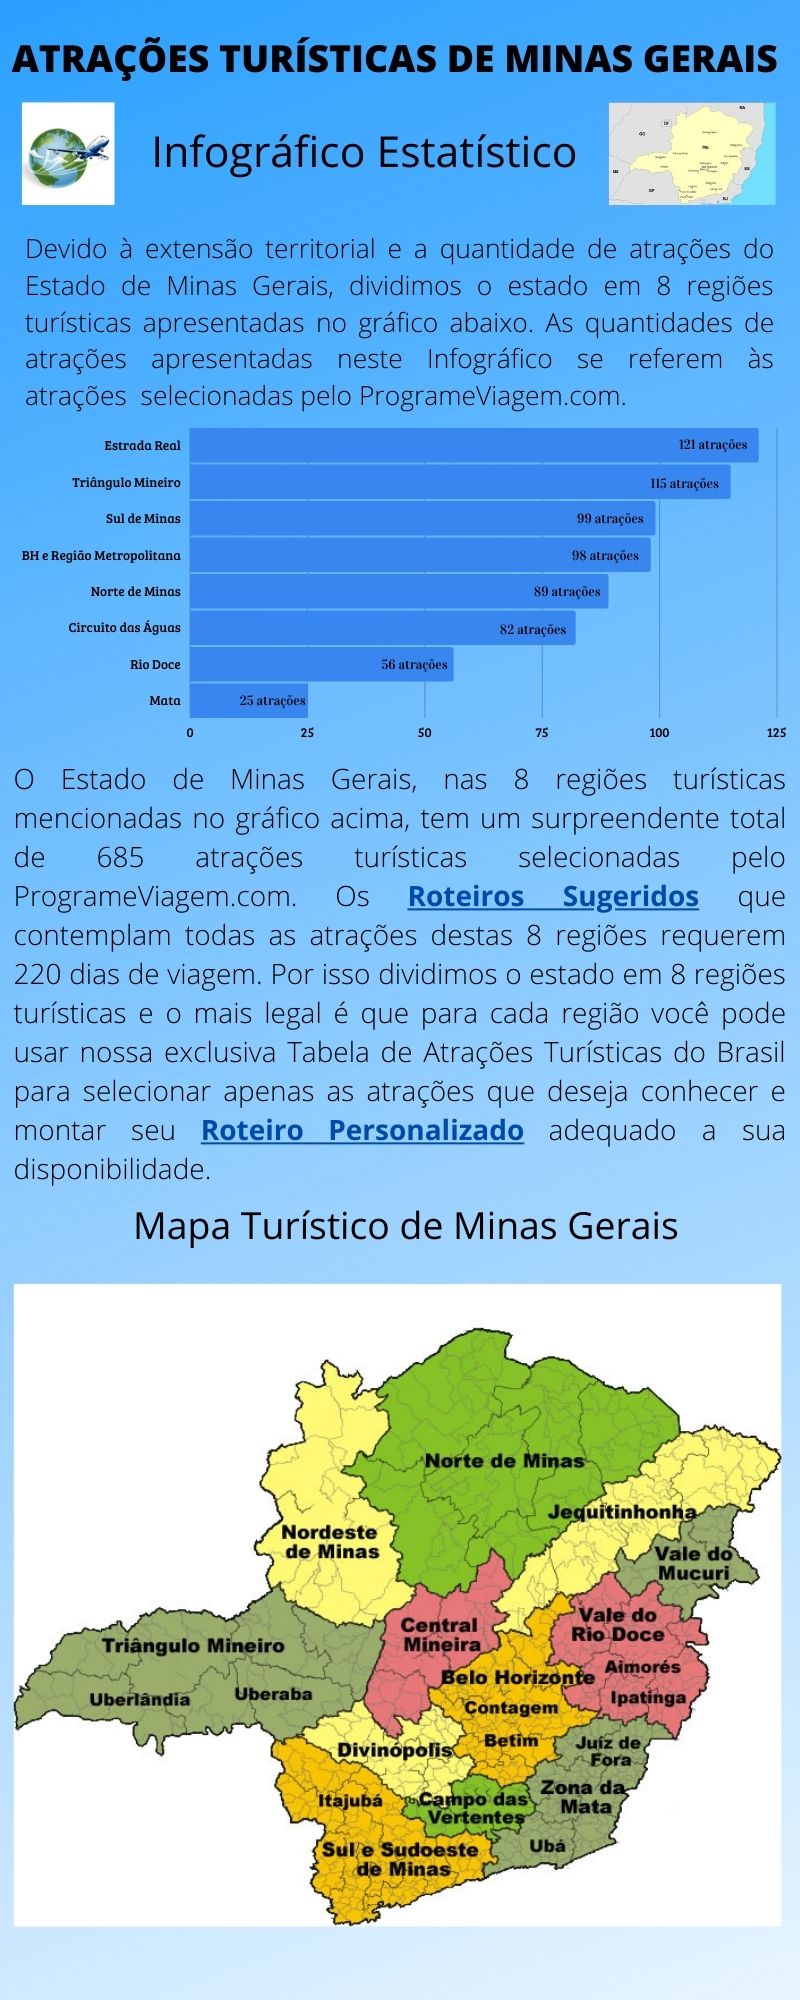 Infográfico Atrações Turísticas de Minas Gerais 1